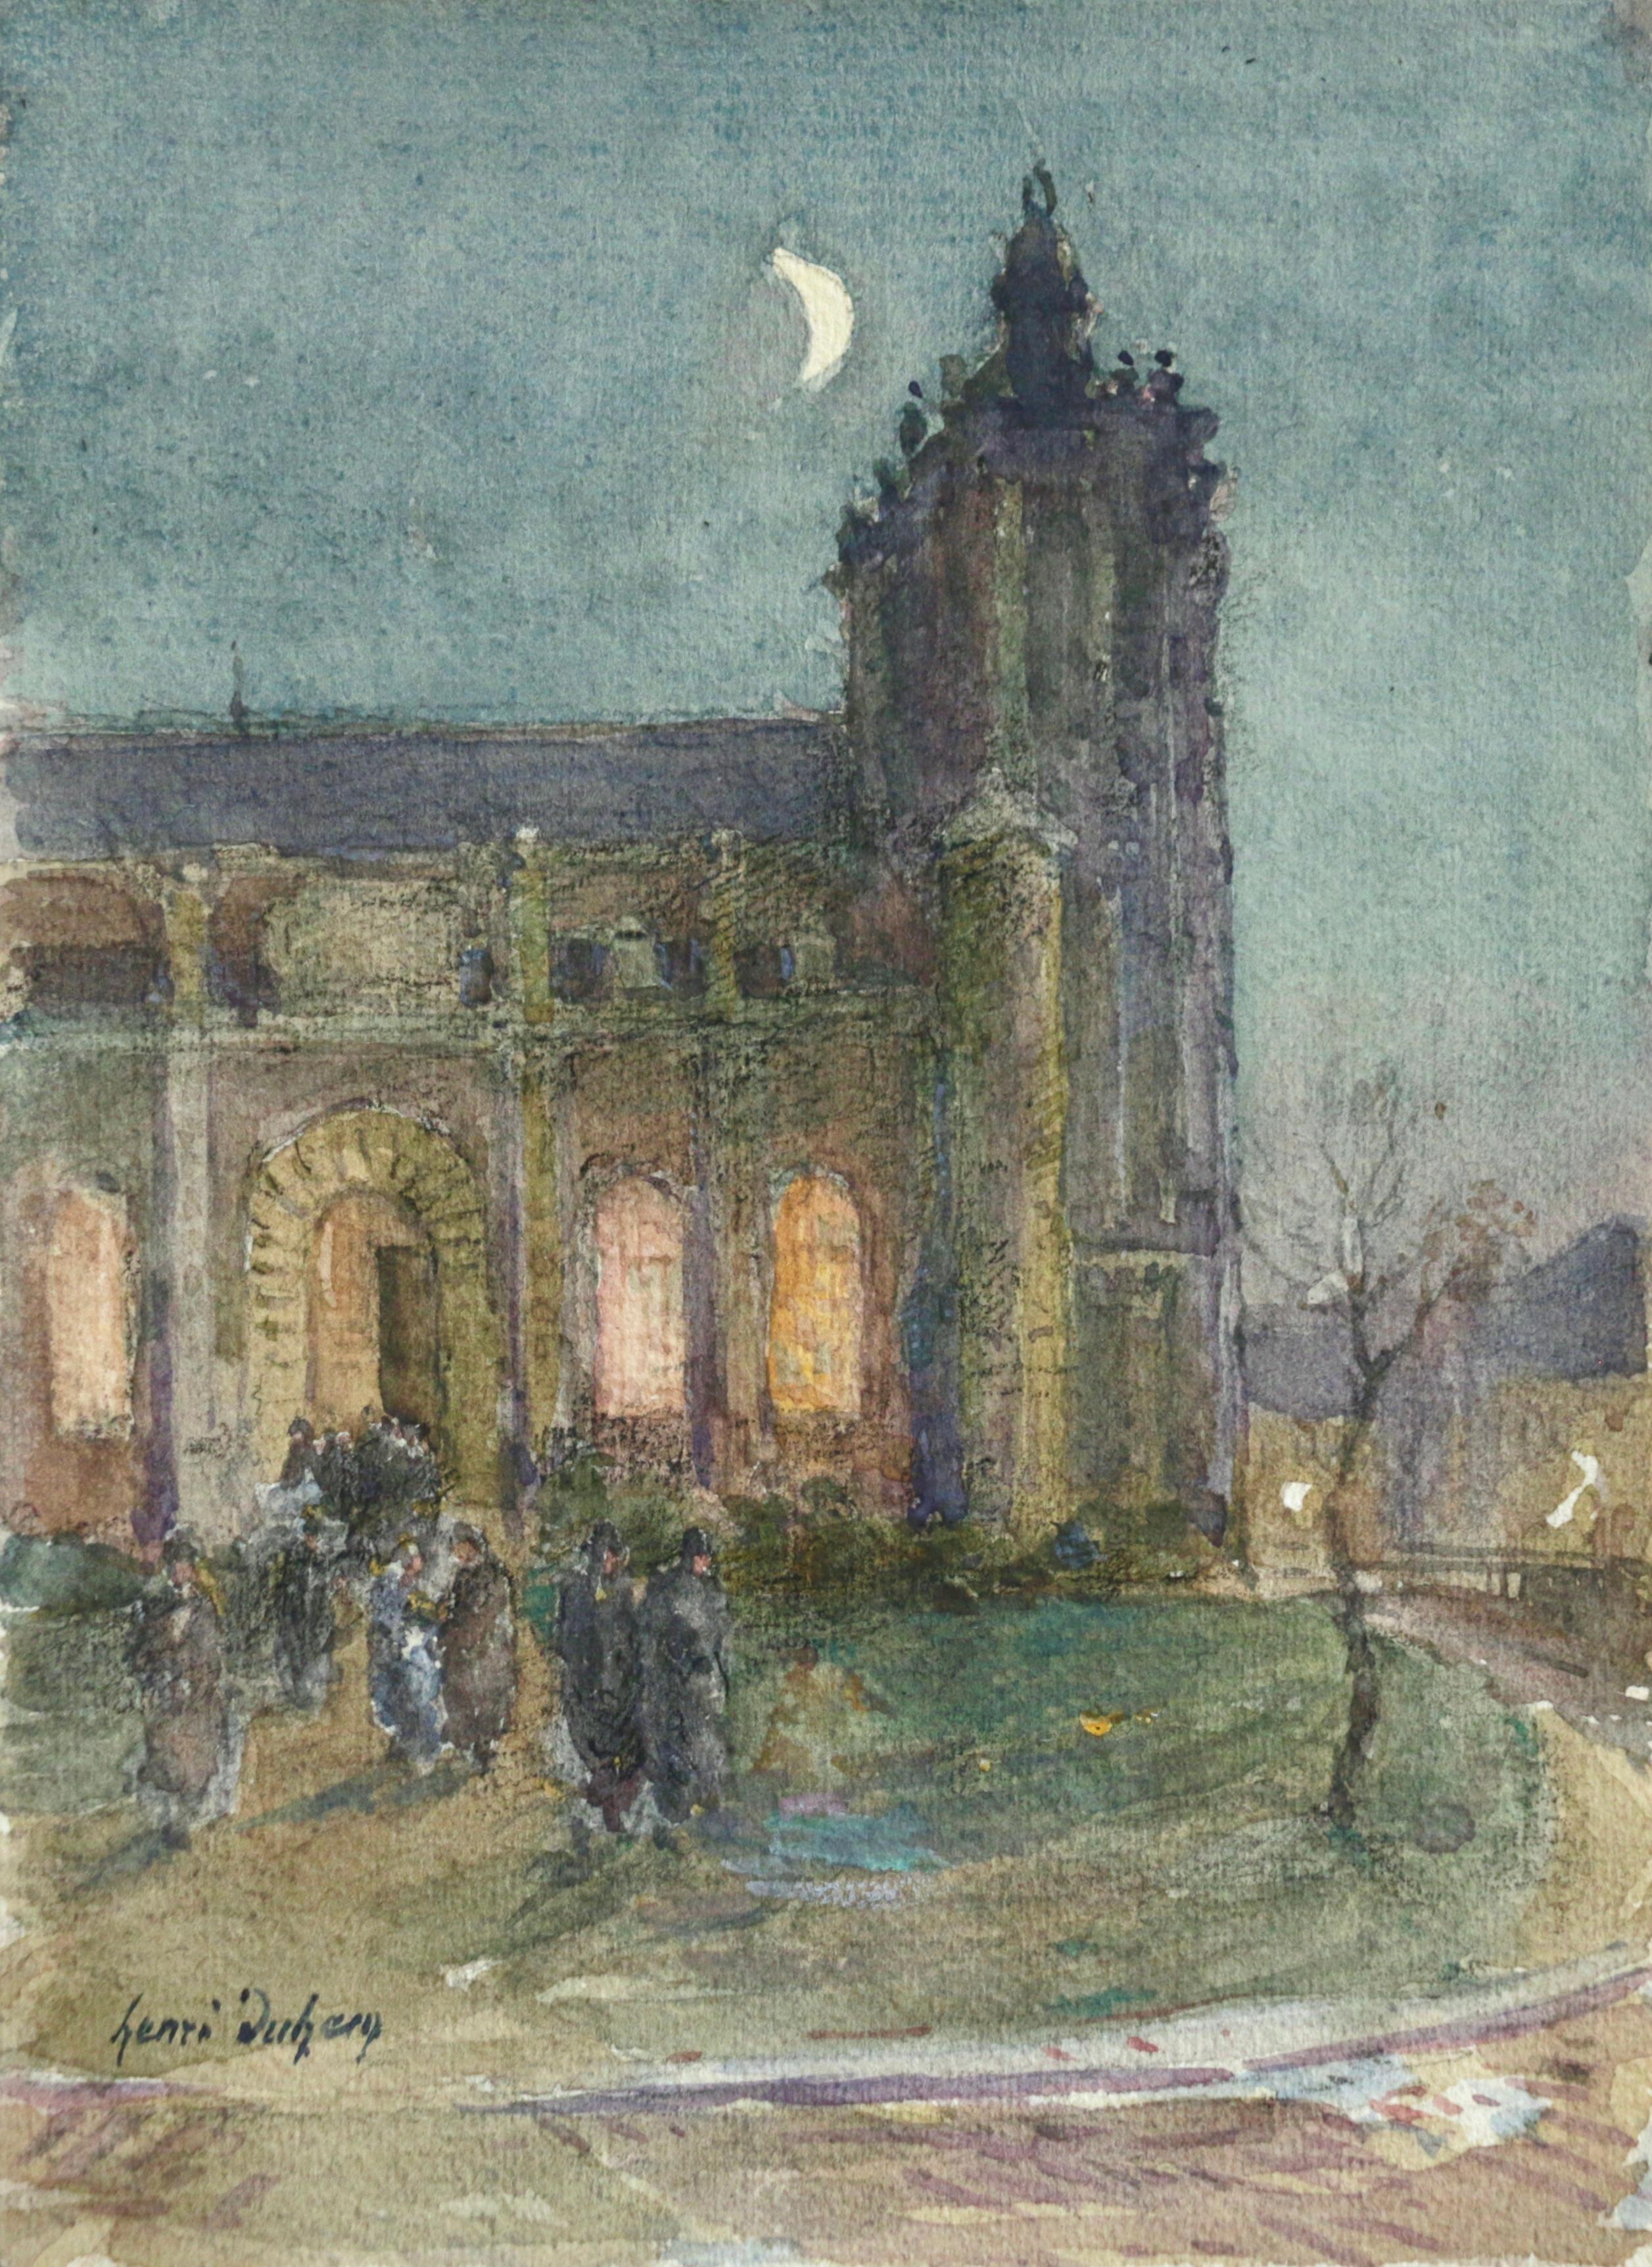 Signiertes impressionistisches Aquarell auf Papier um 1910 von dem französischen Maler Henri Duhem. Das Stück zeigt Kirchenbesucher, die die Messe verlassen und in die kalte Nacht hinausgehen. Die Mondsichel leuchtet hell über der Kirche in den